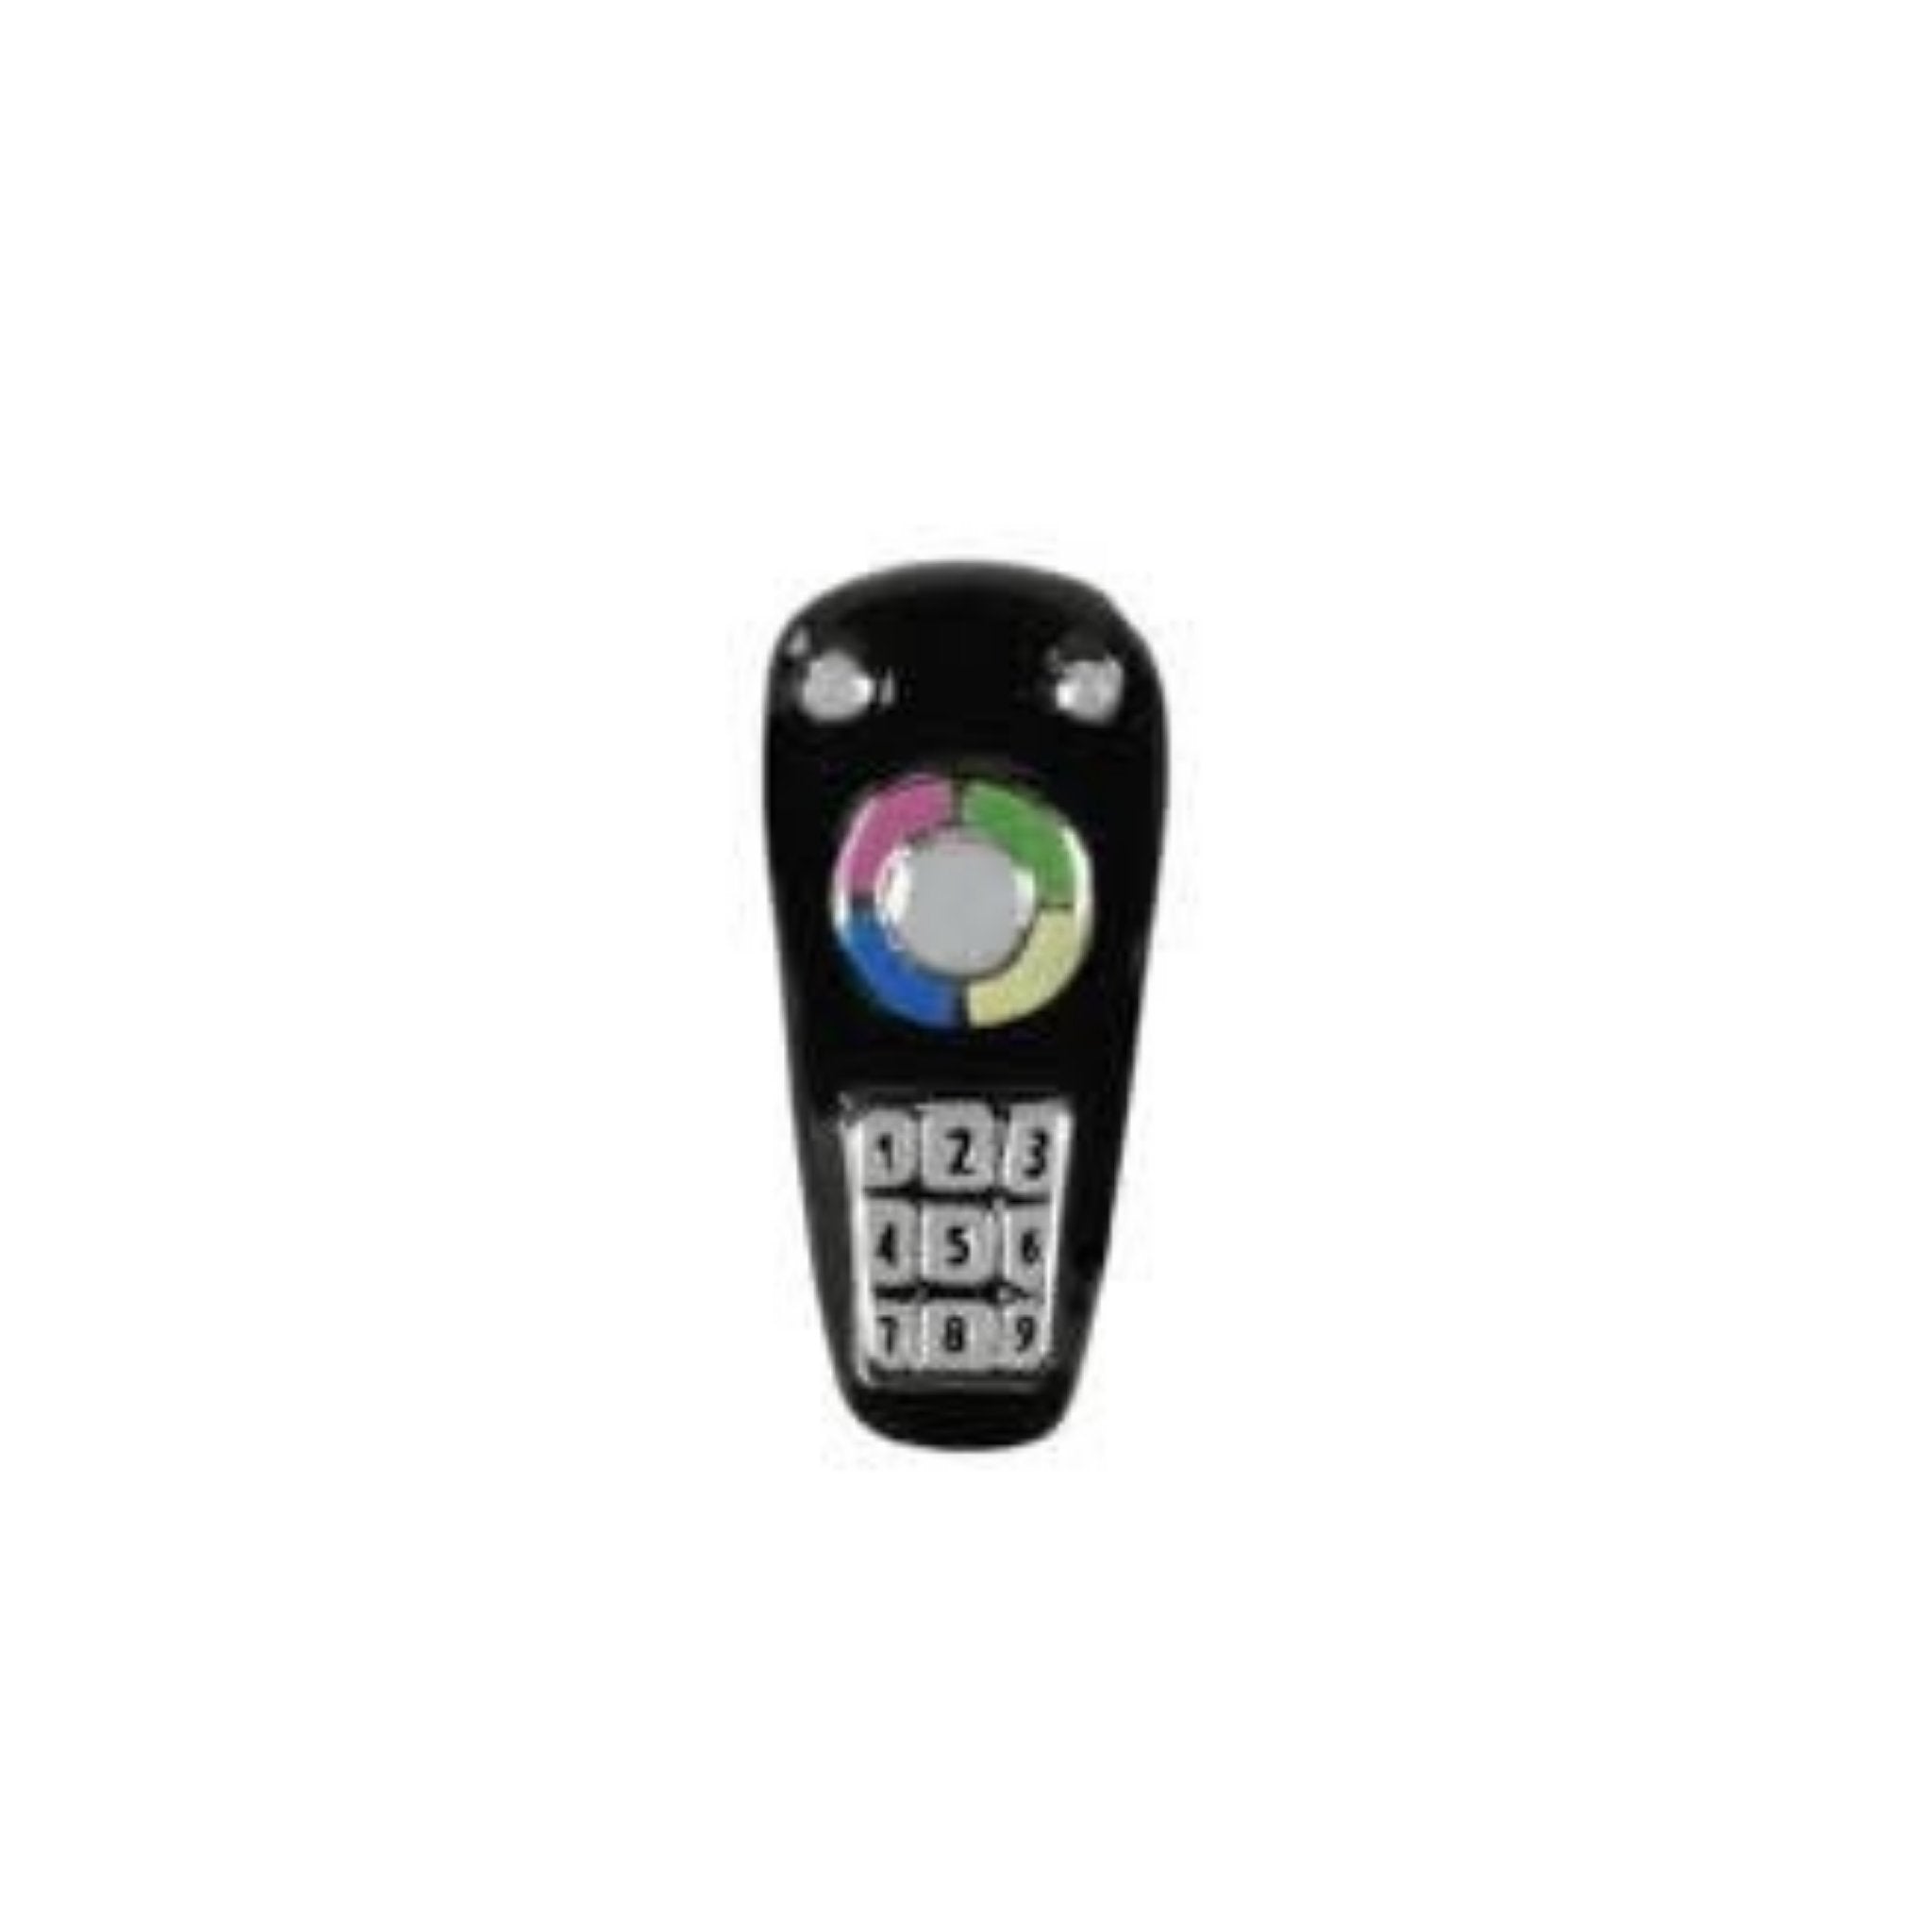 Memory Locket Charm - TV remote